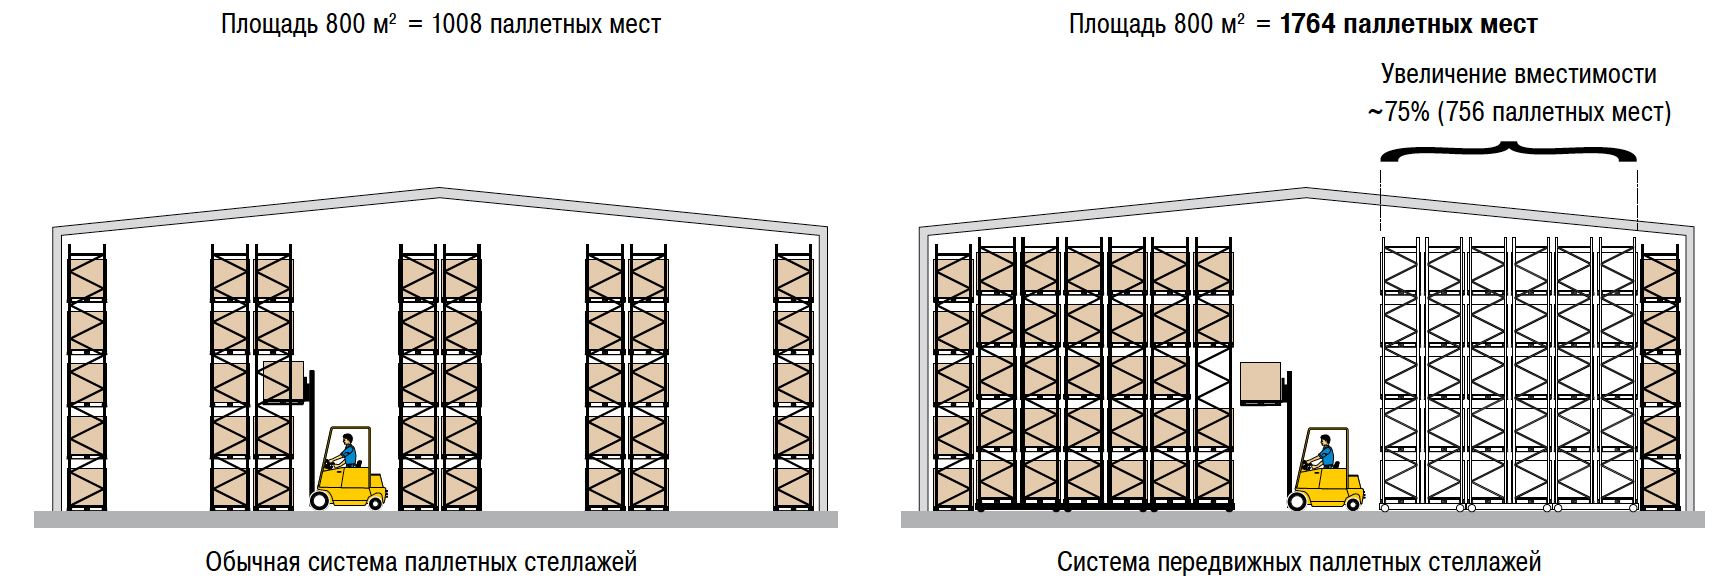 Расположение стеллажей. Складской стеллажный комплекс (система r 4000). Схема расстановки паллетных стеллажей. Схема расстановки складских стеллажей. Стеллаж паллетный (Размеры (ВXШXГ) В мм: 3000x6675x1100).